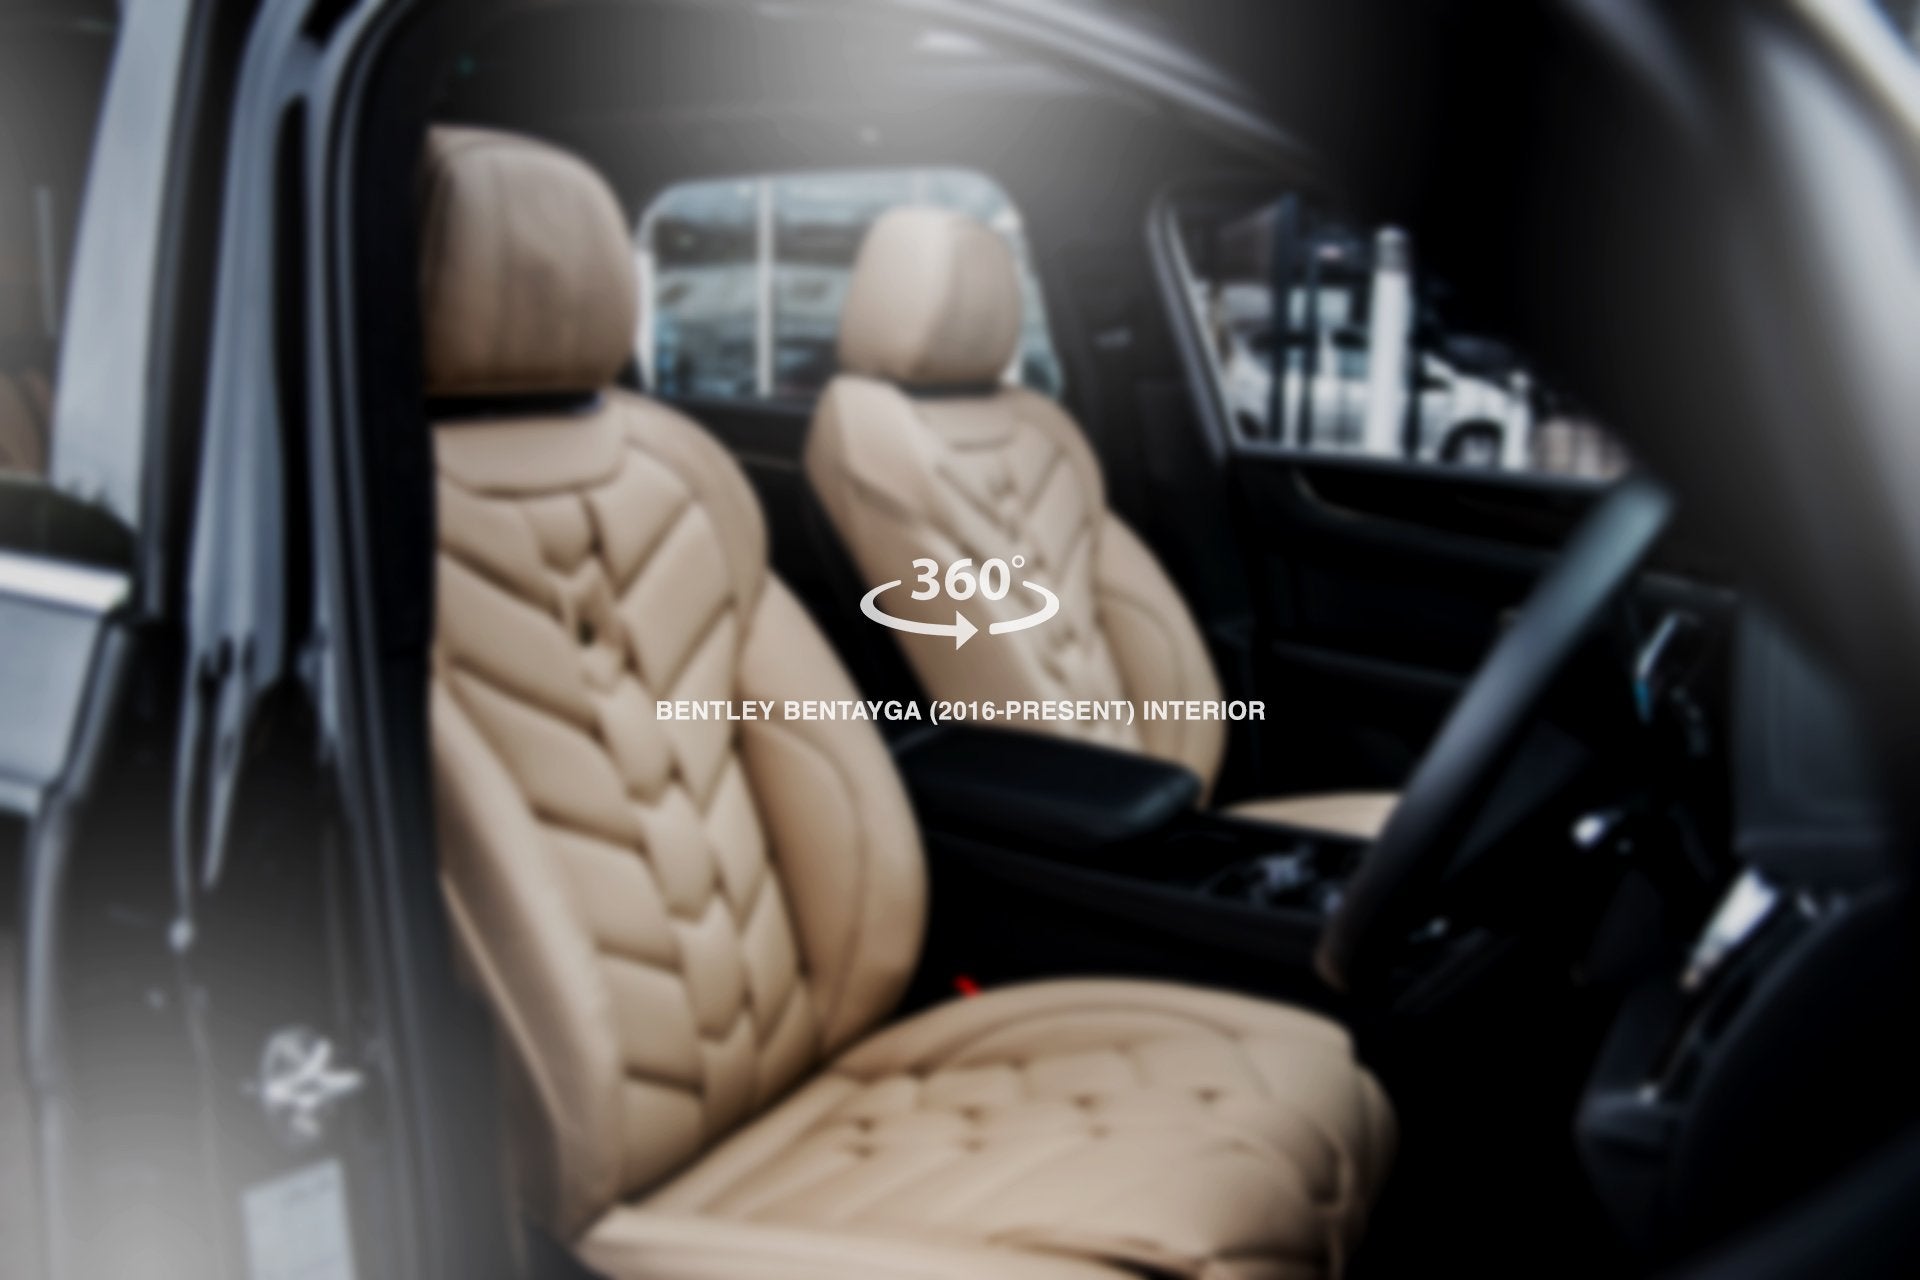 Bentley Bentayga (2016-Present) Comfort Interior - 7 Seats - Project Kahn